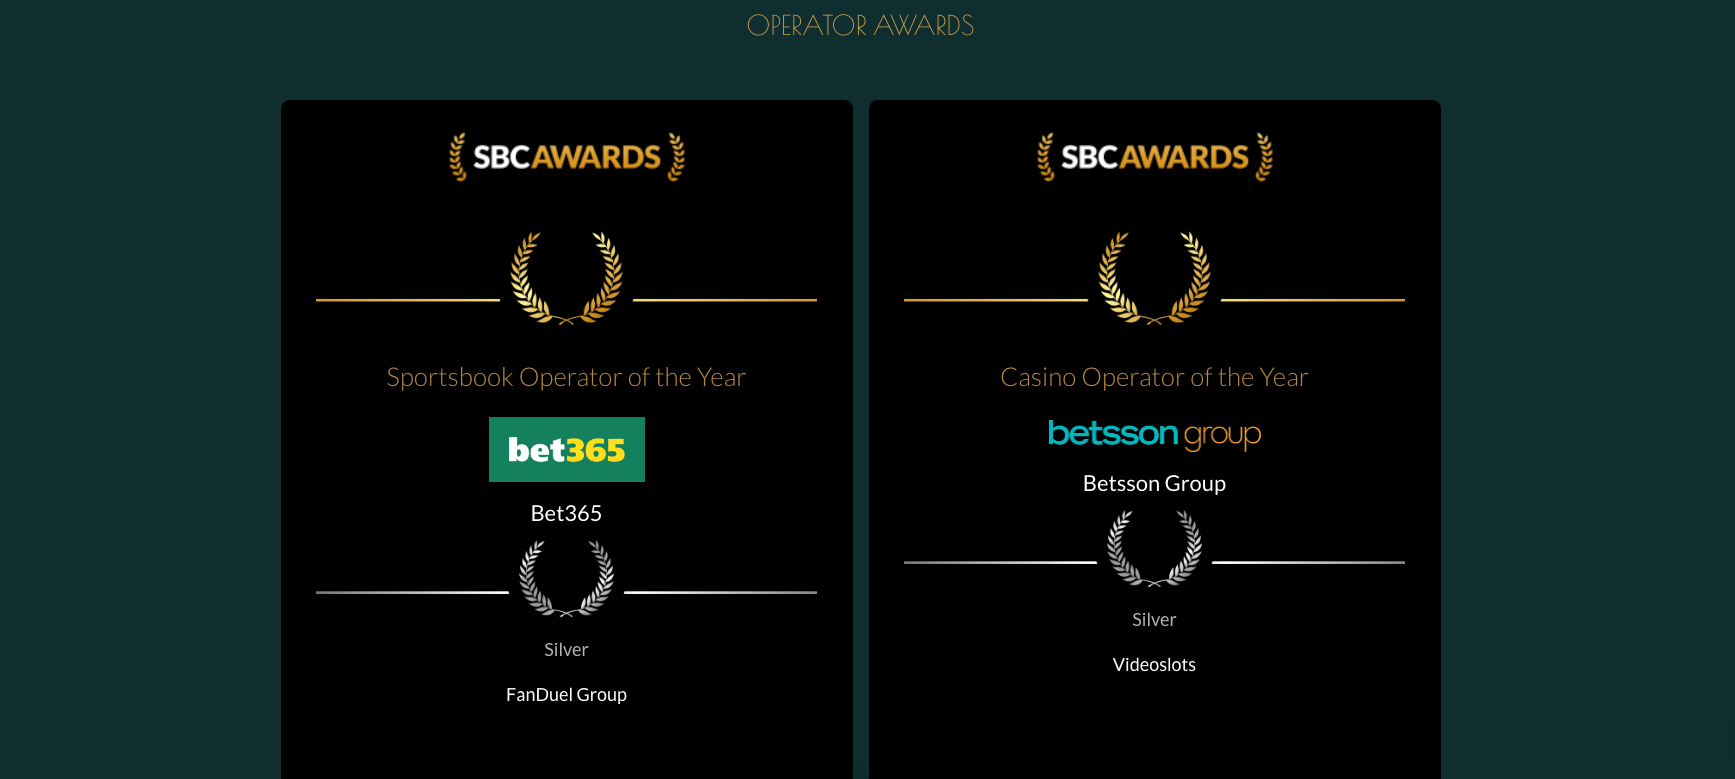 Betsson menang di SBC Awards, Videoslots memenangkan perak.  Operator dan penyedia pemenang penghargaan di Barcelona